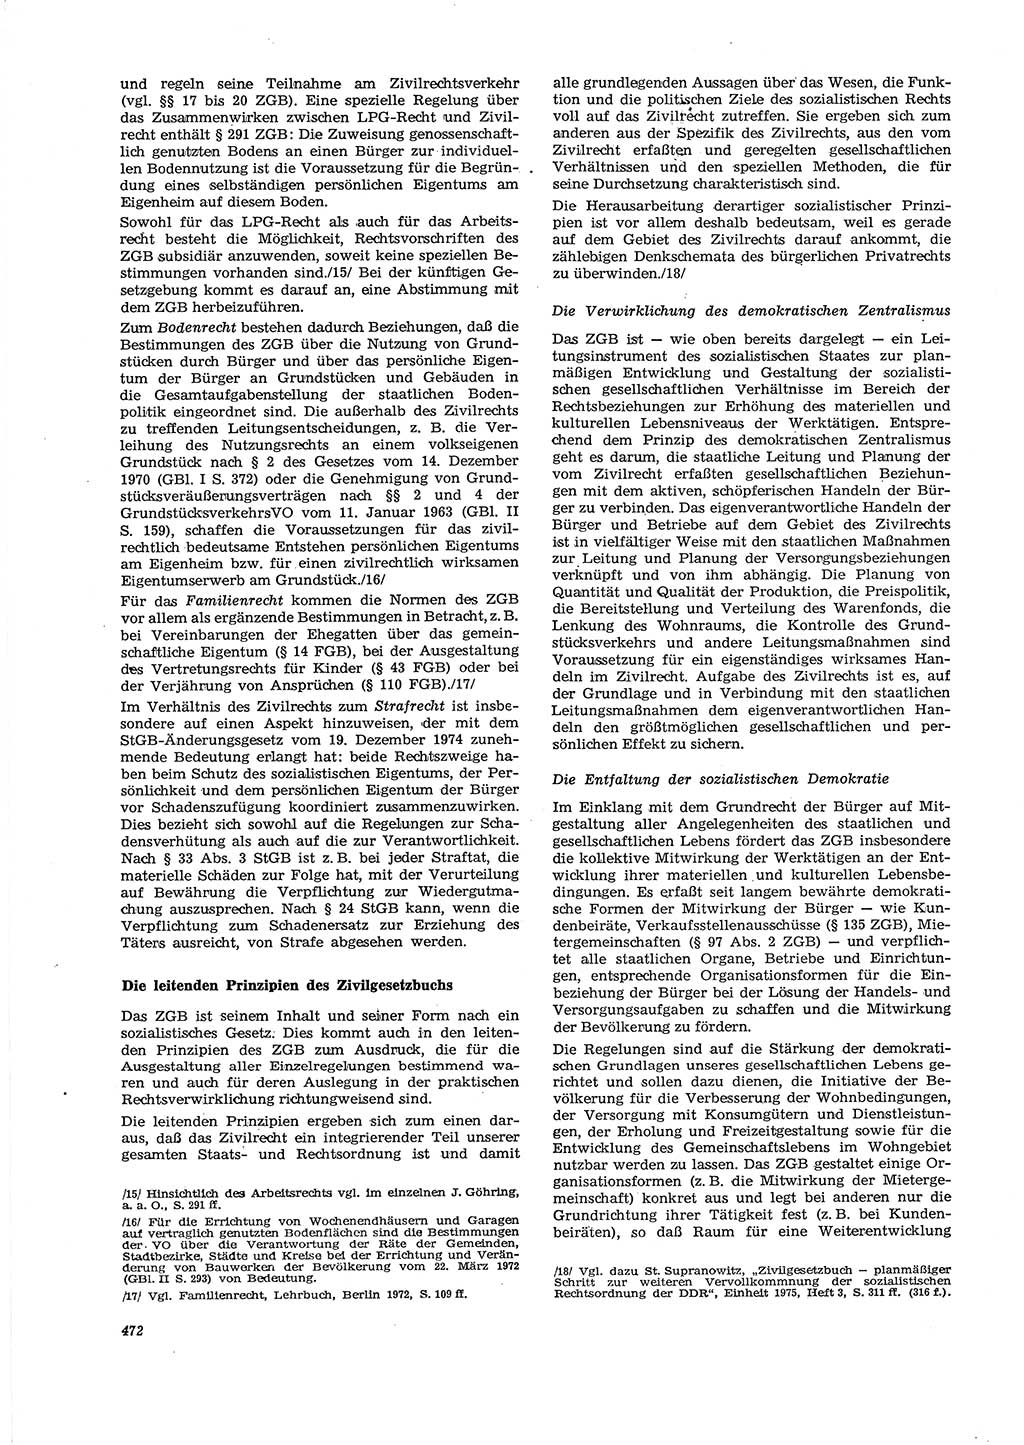 Neue Justiz (NJ), Zeitschrift für Recht und Rechtswissenschaft [Deutsche Demokratische Republik (DDR)], 29. Jahrgang 1975, Seite 472 (NJ DDR 1975, S. 472)